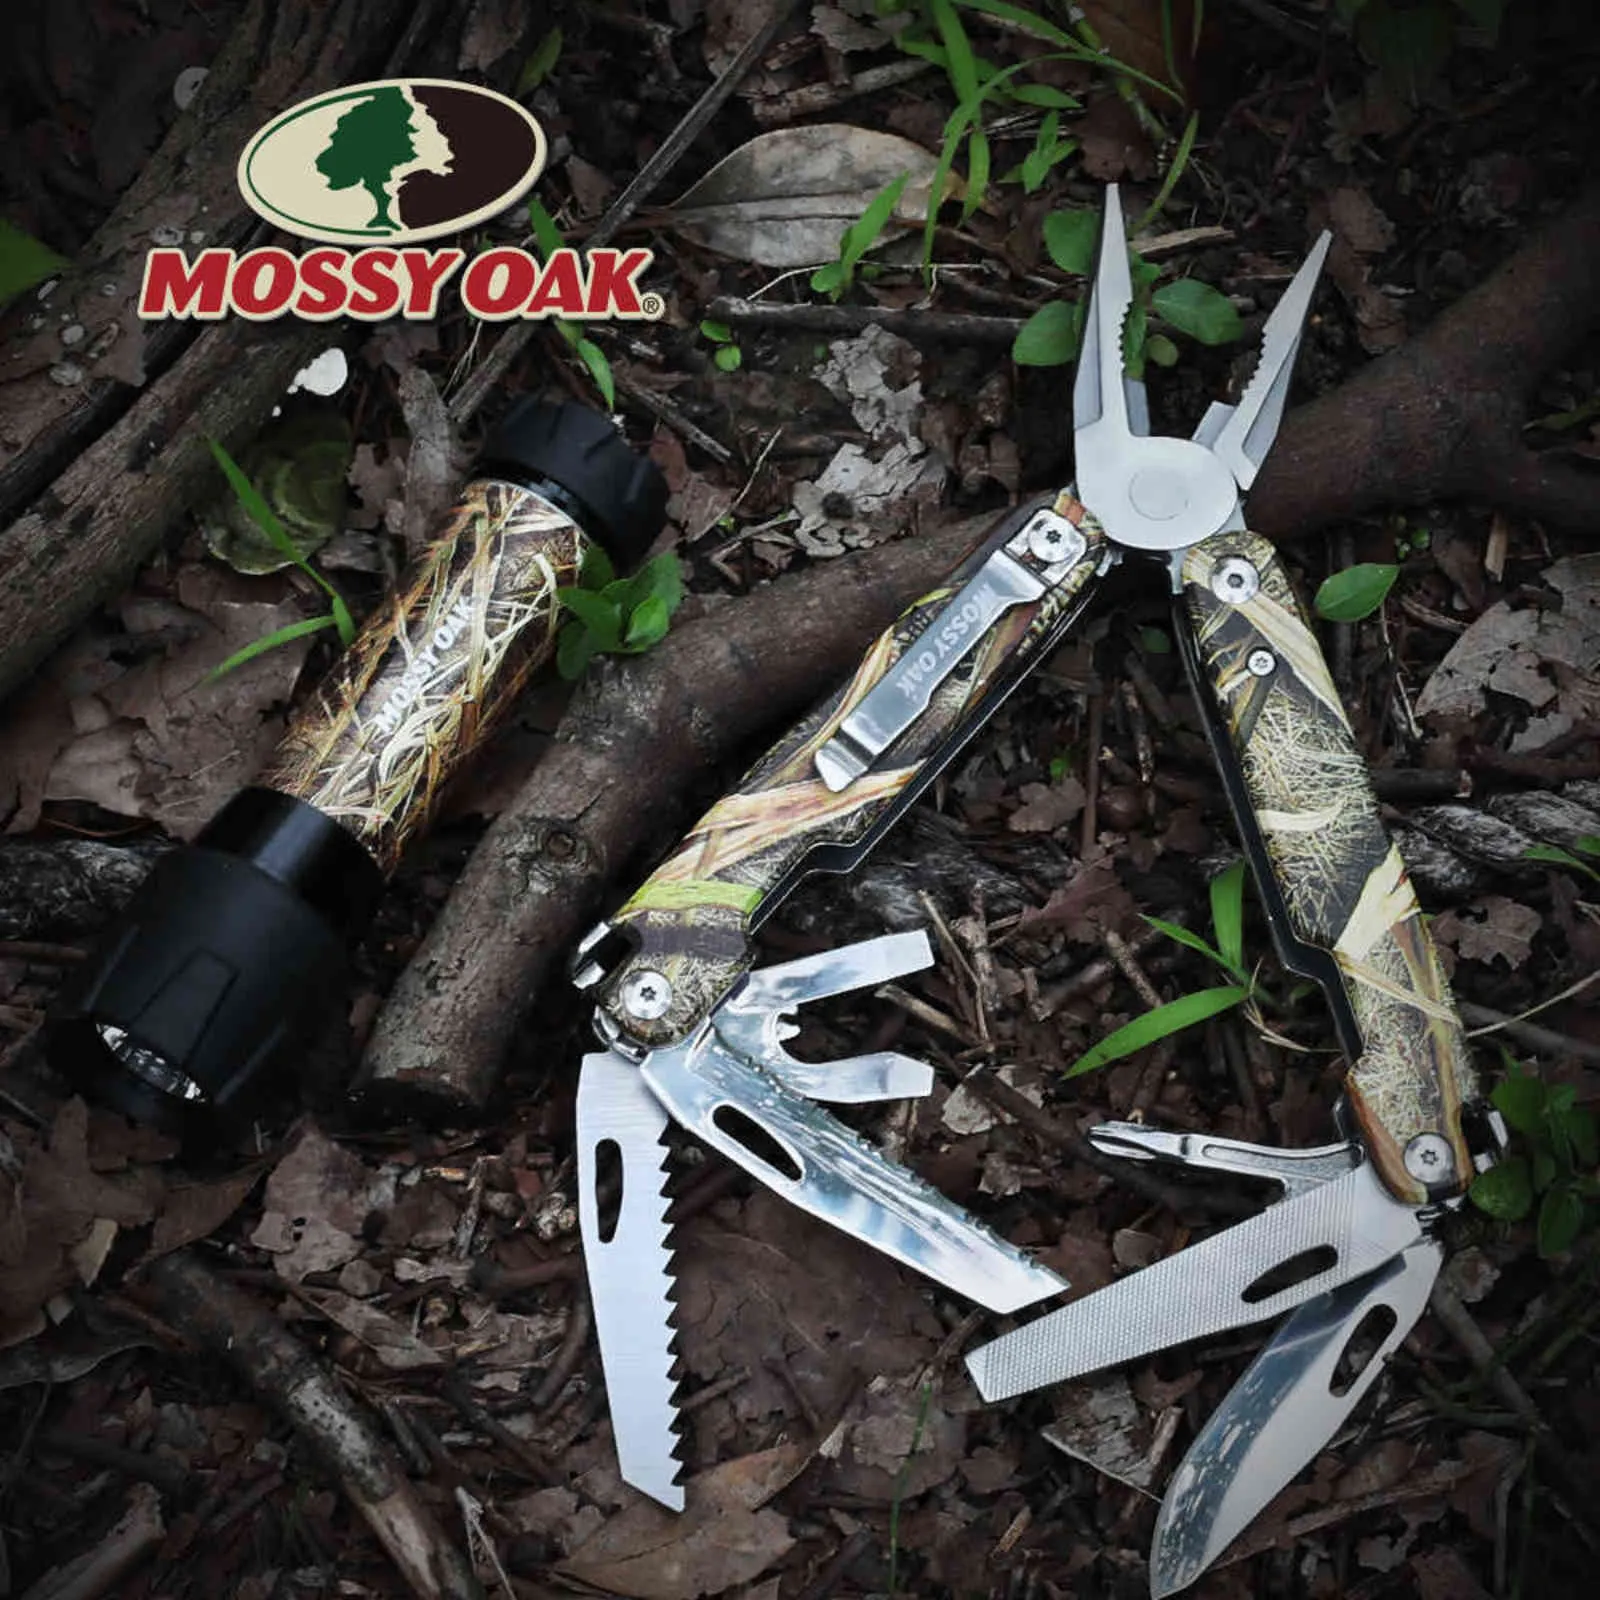 Mossy Oak Multiool 12 In-1 Multi Pense Tel Kesici Çok Fişli Aletler Hayatta Kalma Kamp Aracı Balıkçılık 211028222Z